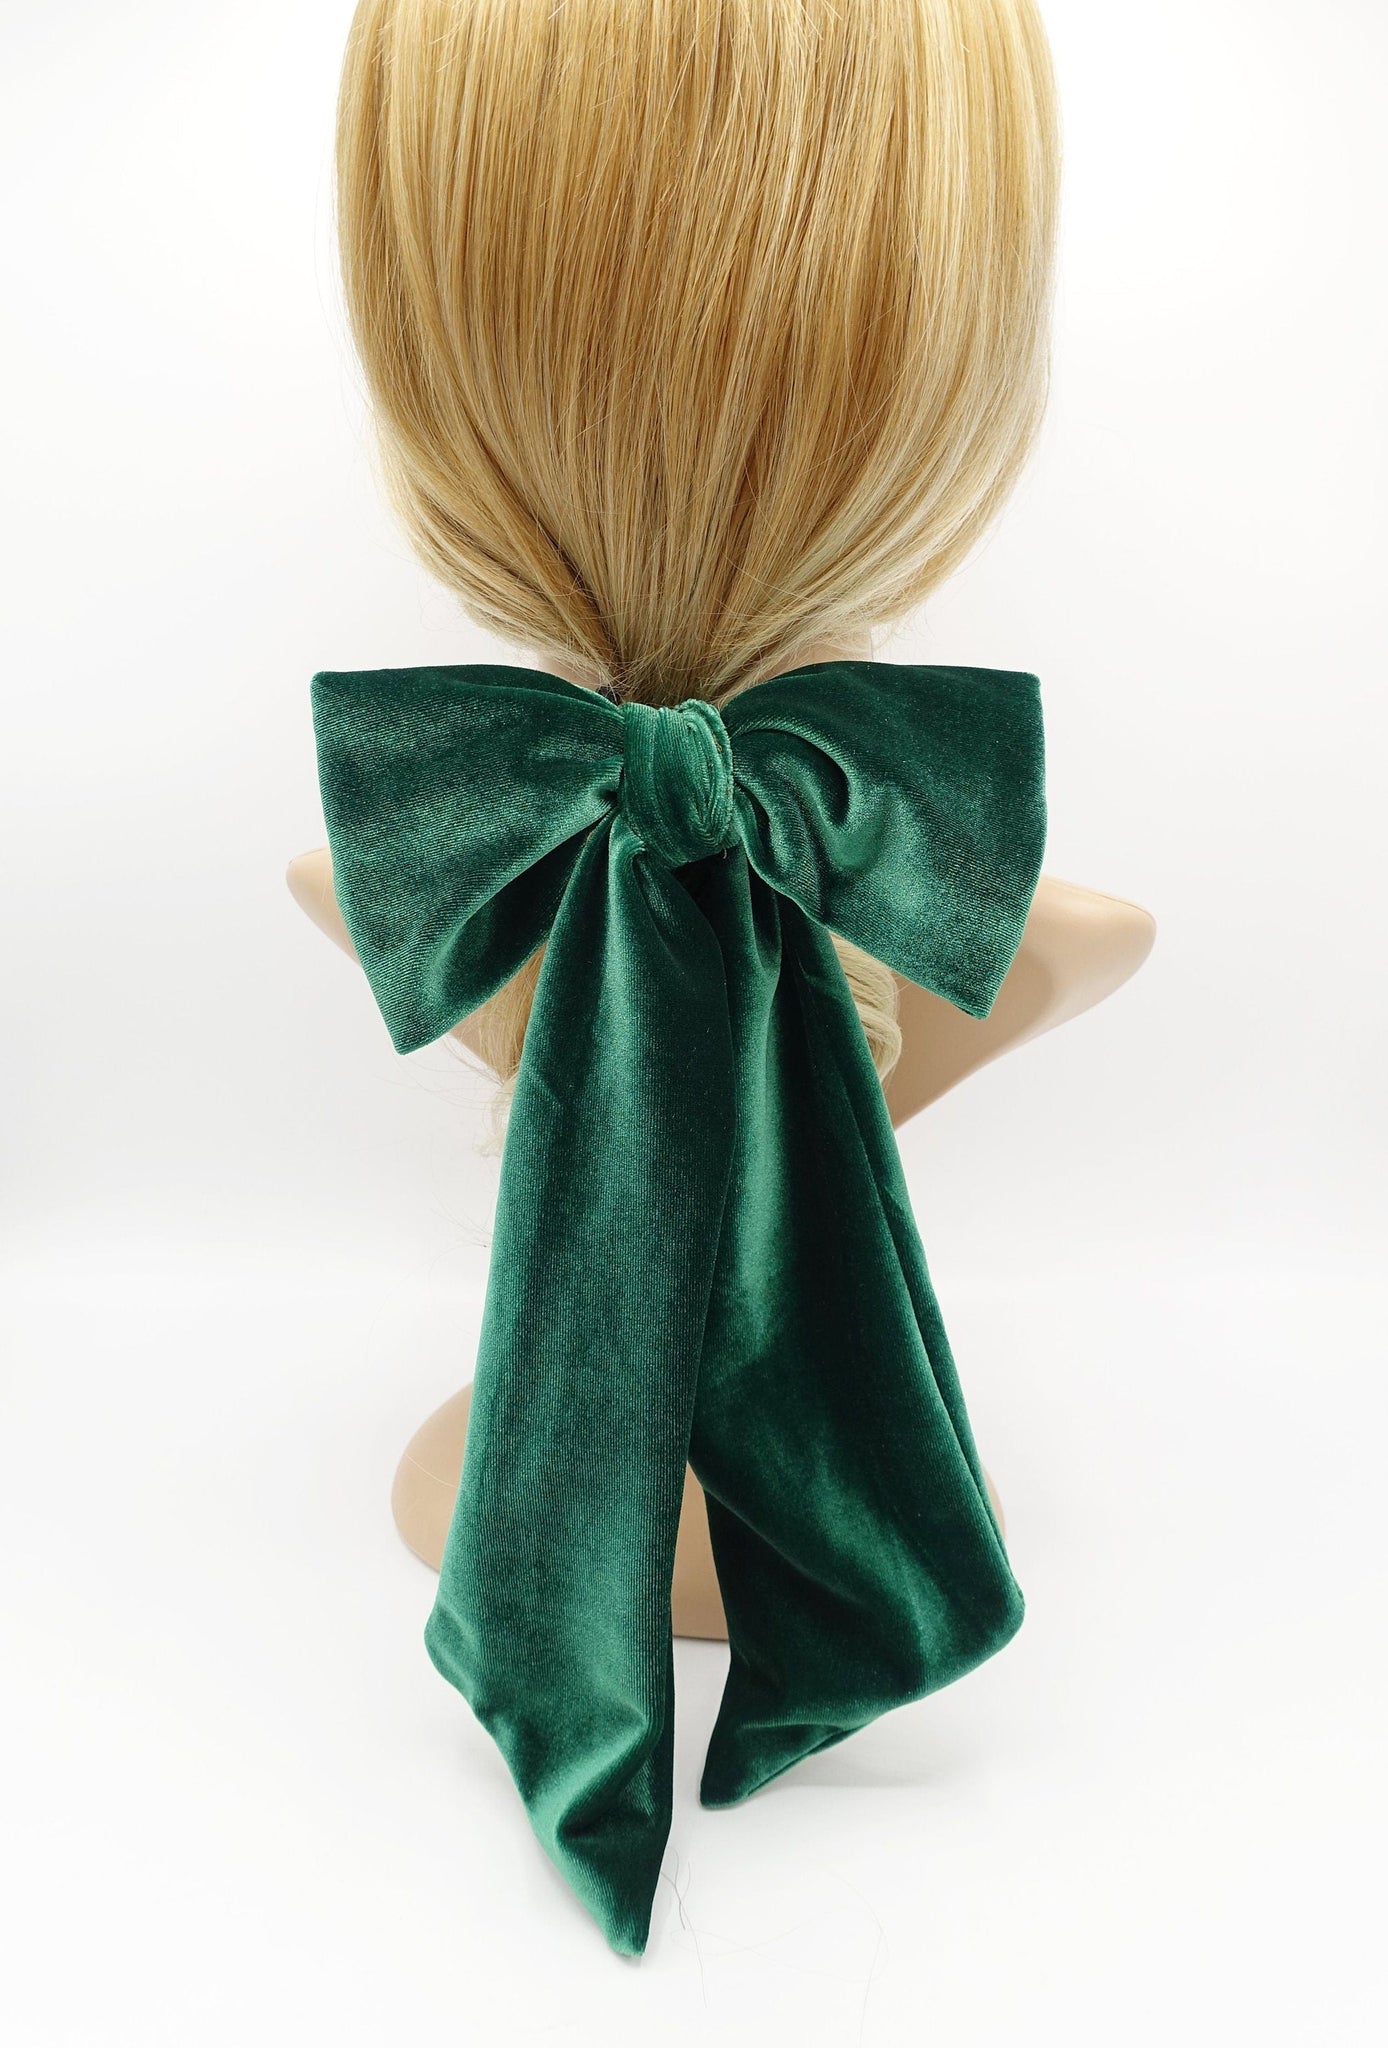 veryshine.com Barrette (Bow) long giant velvet bow hair elastic ponytail holder